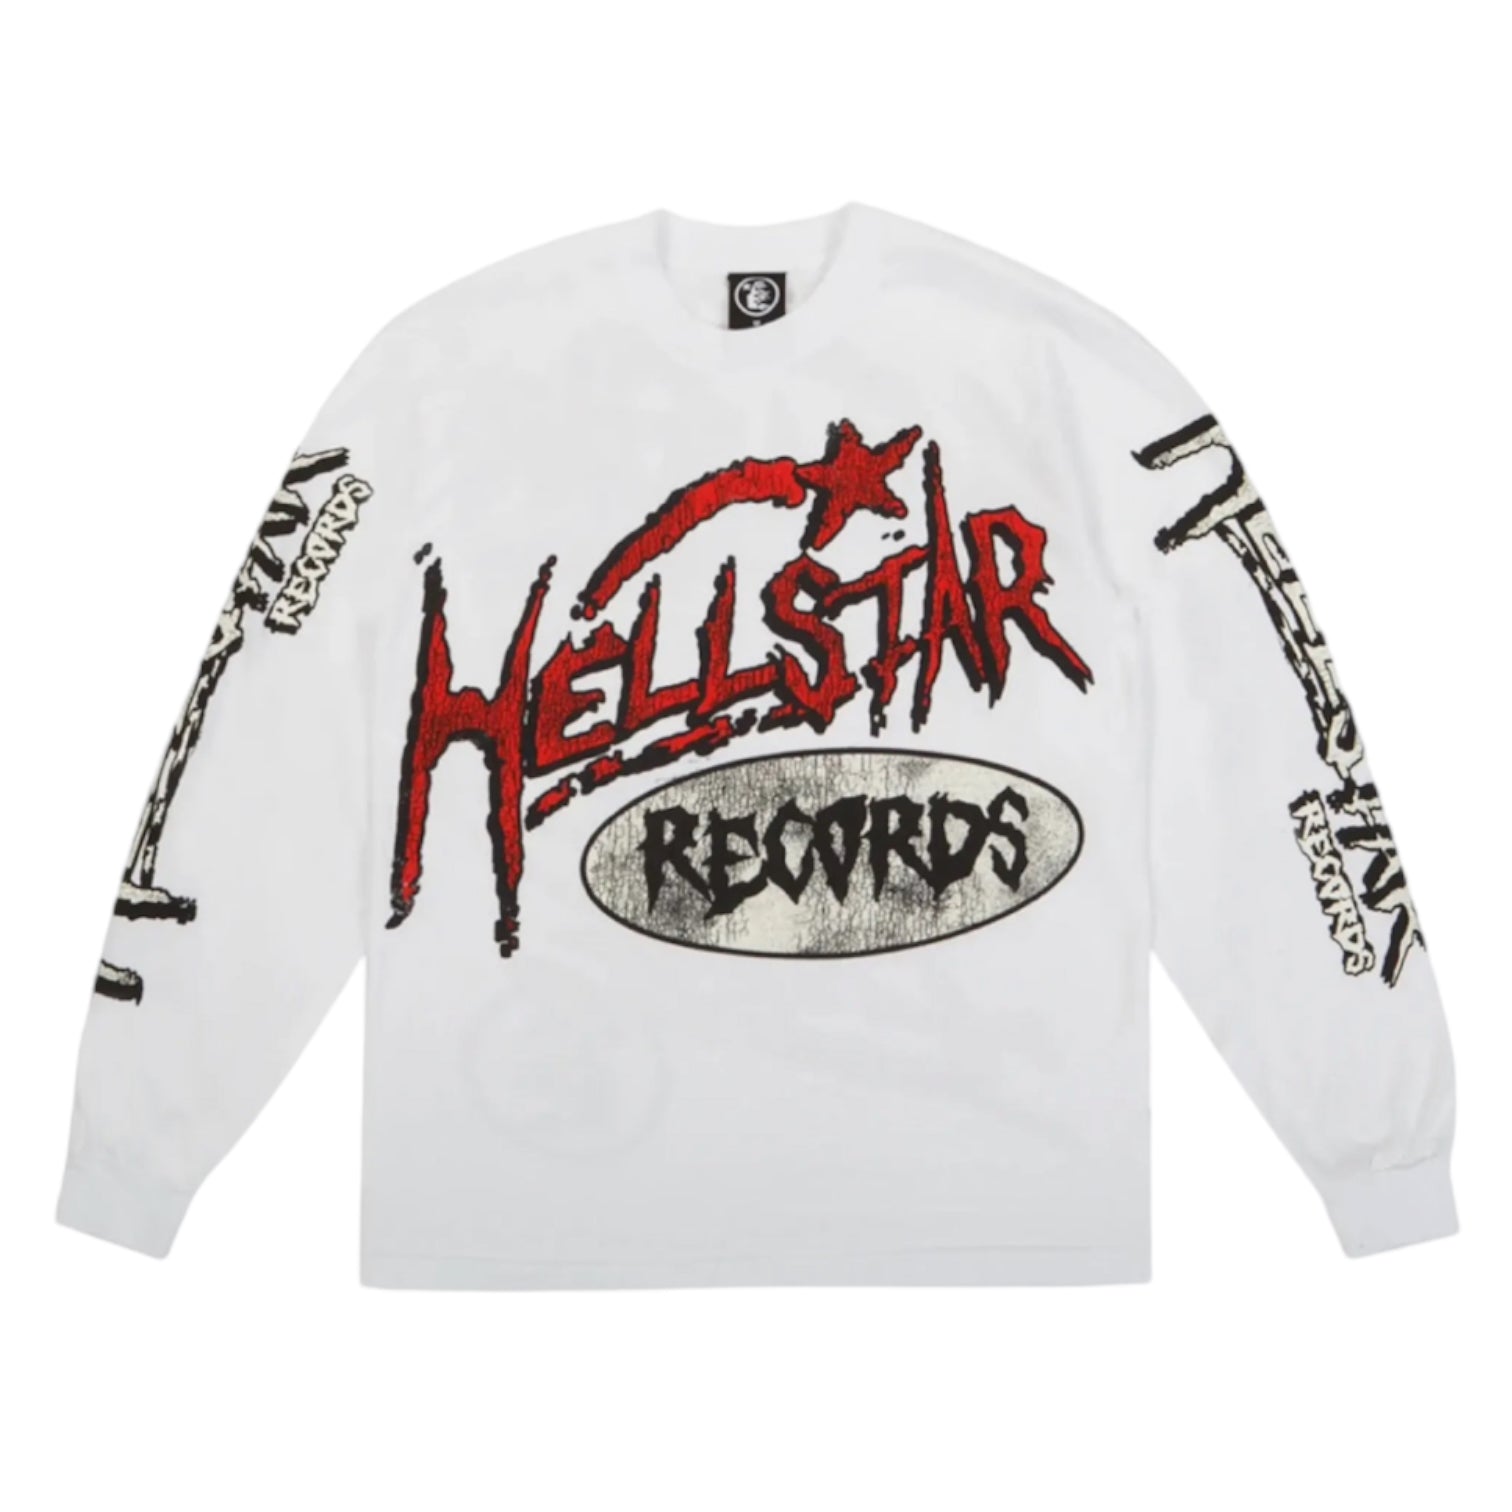 Hellstar Records L/S Tee